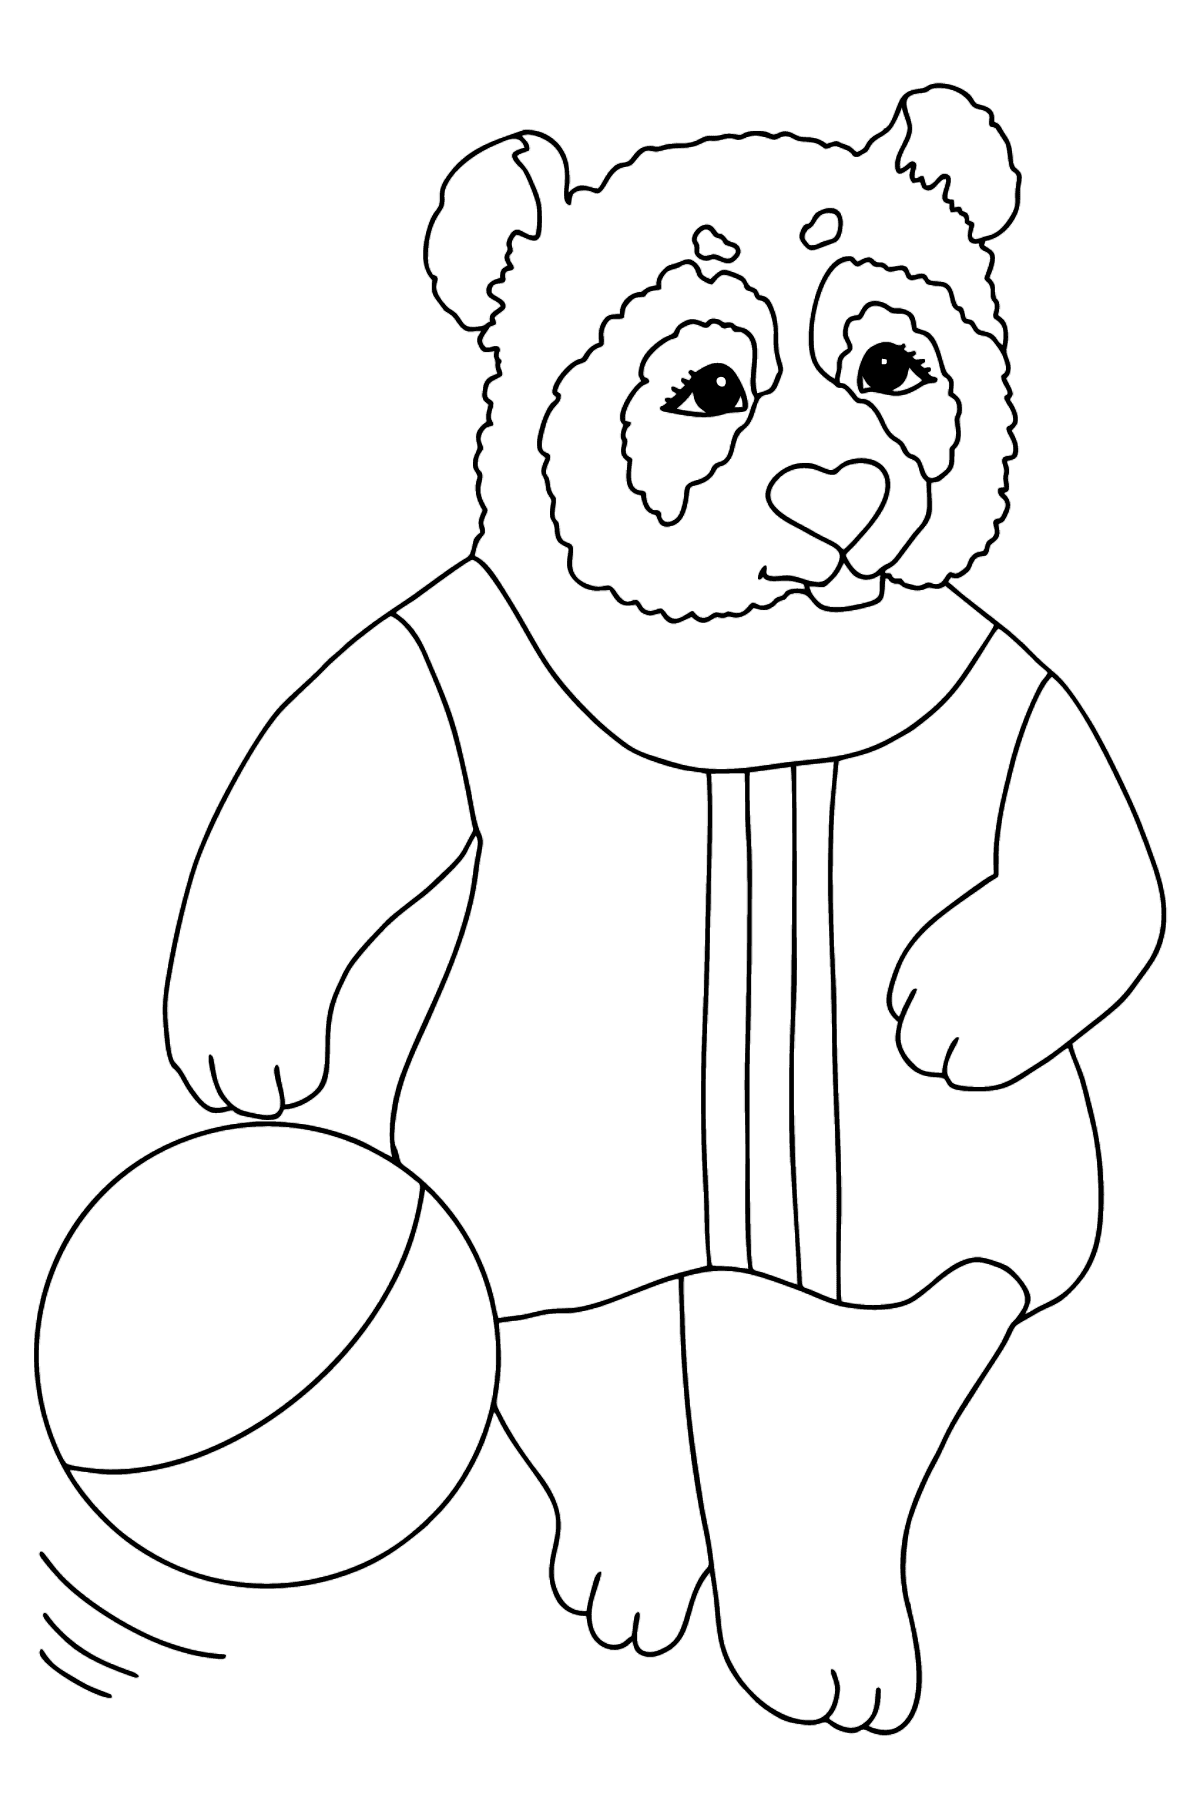 Kolorowanka Panda dla maluchów (Trudny) - Kolorowanki dla dzieci